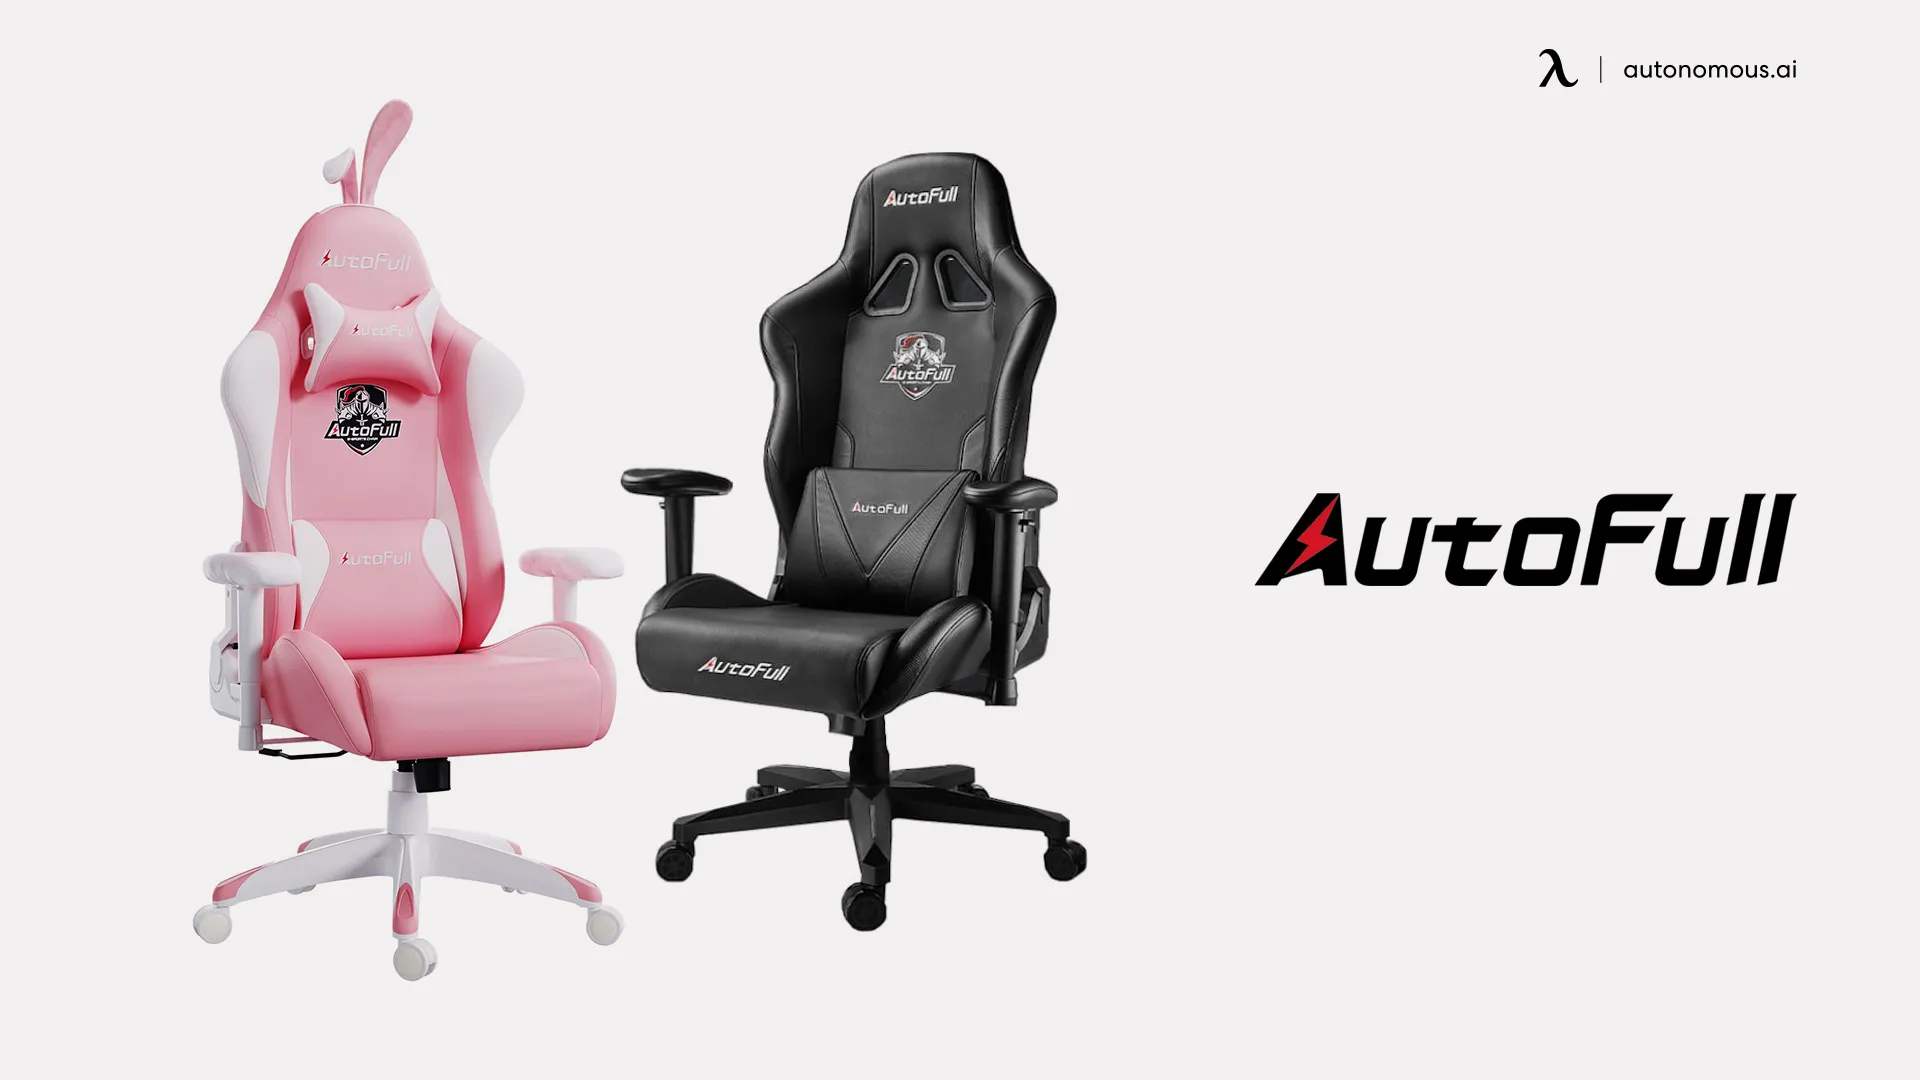 Autofull gaming chair brand